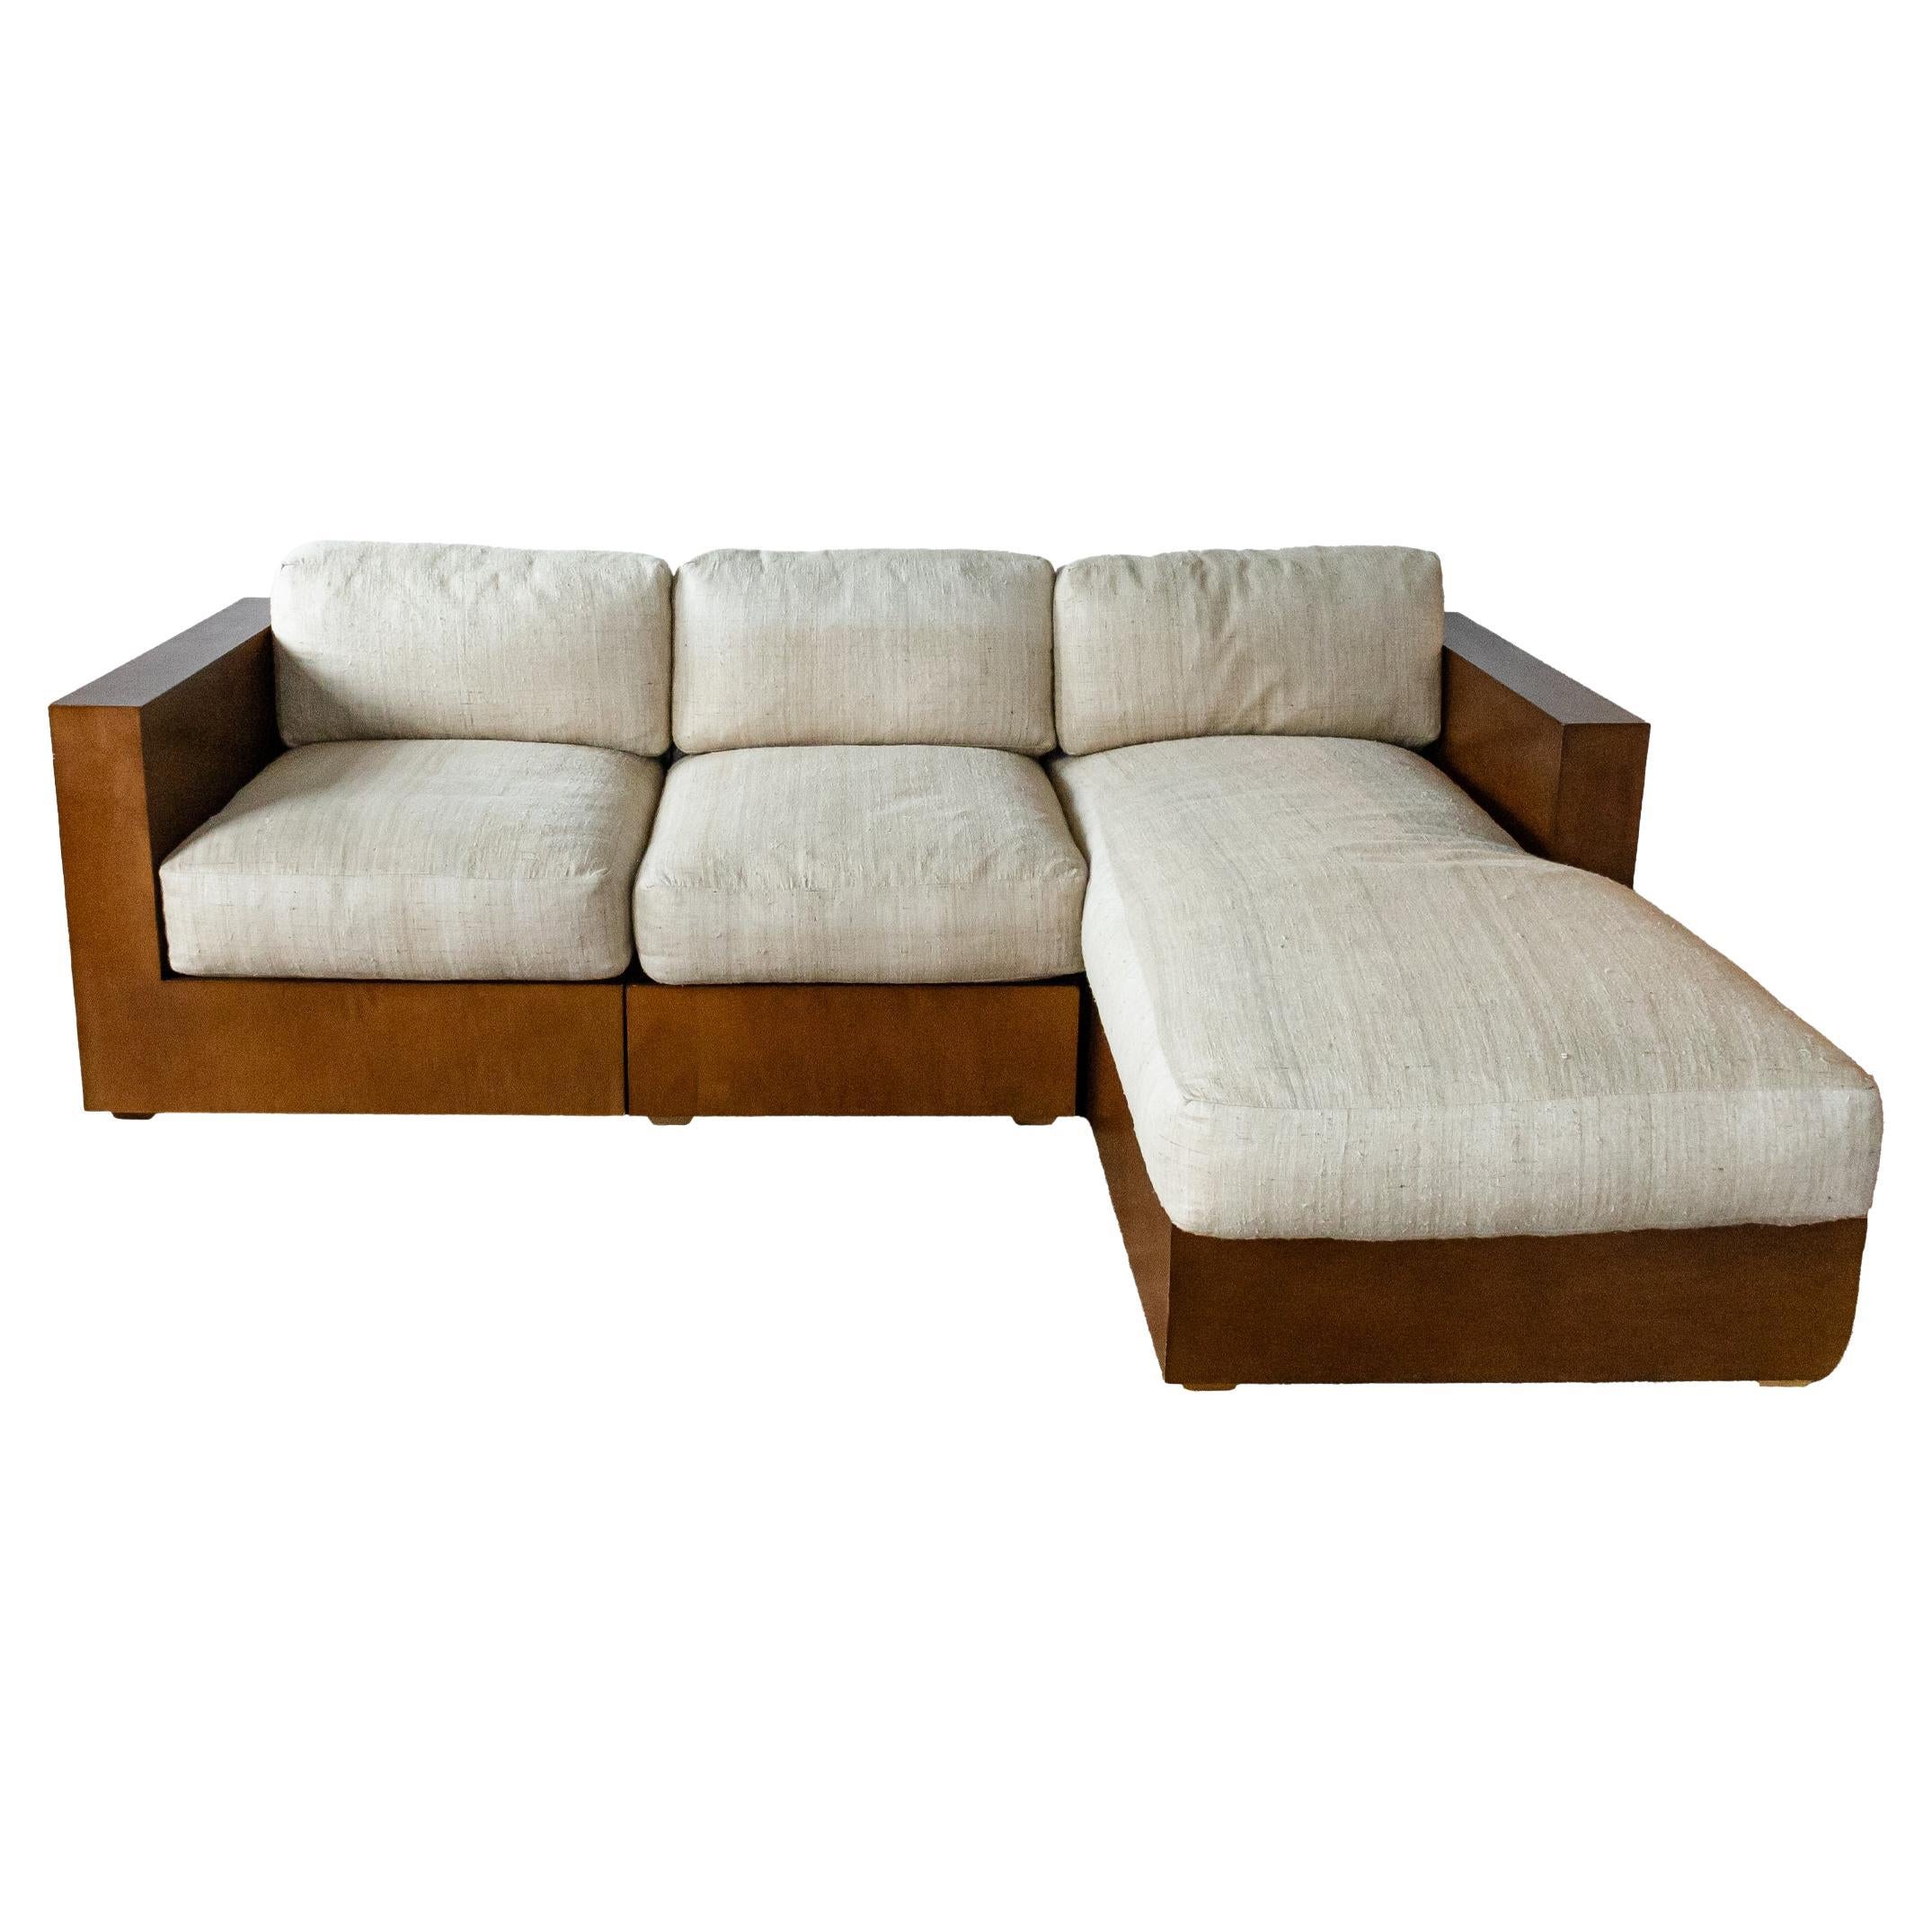 Canapé modulaire sectionnel en bois de noyer Ralph Lauren, contemporain et moderne, 3 pièces en vente